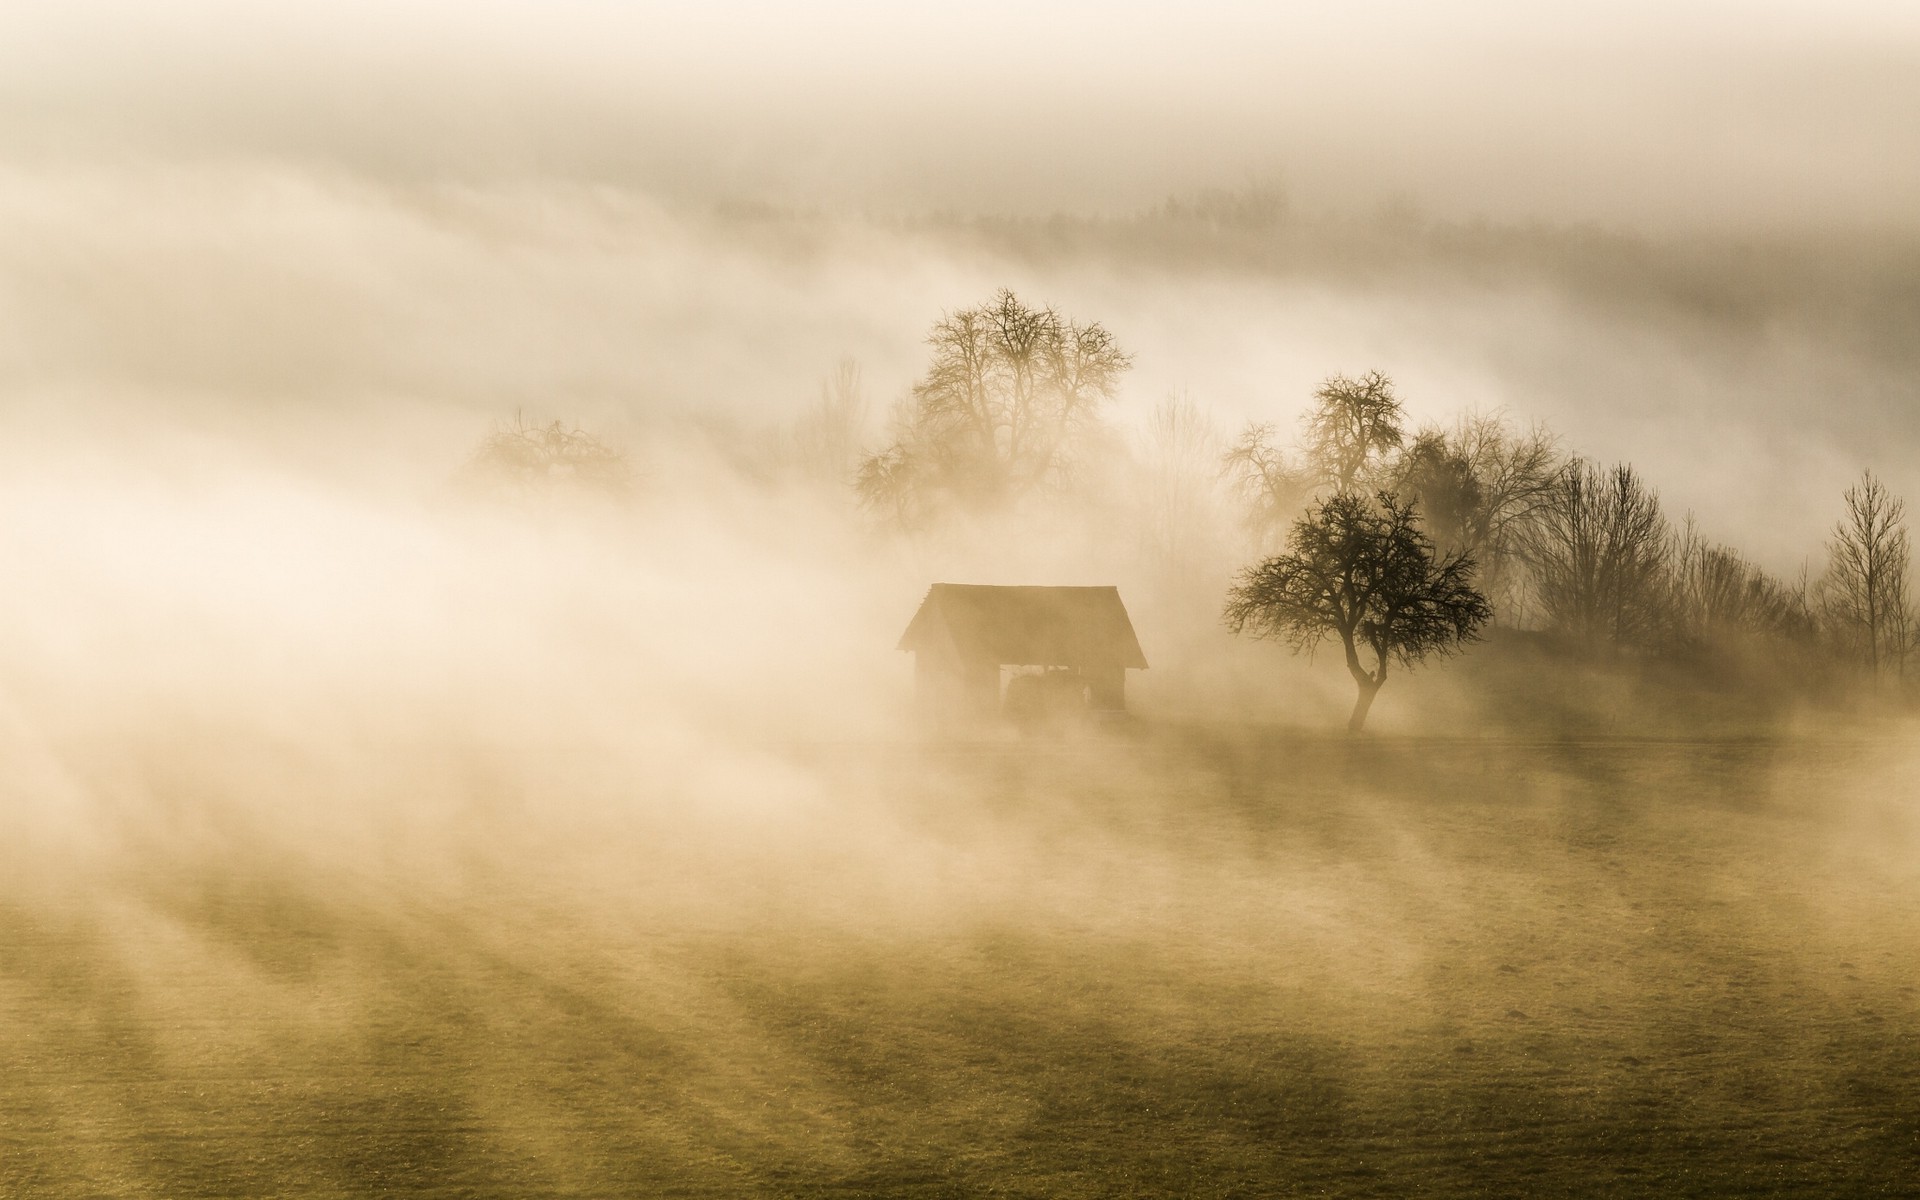 mist, Nature, Landscape, Trees, Evening, Shrubs, Hut, Grass, Hill Wallpaper